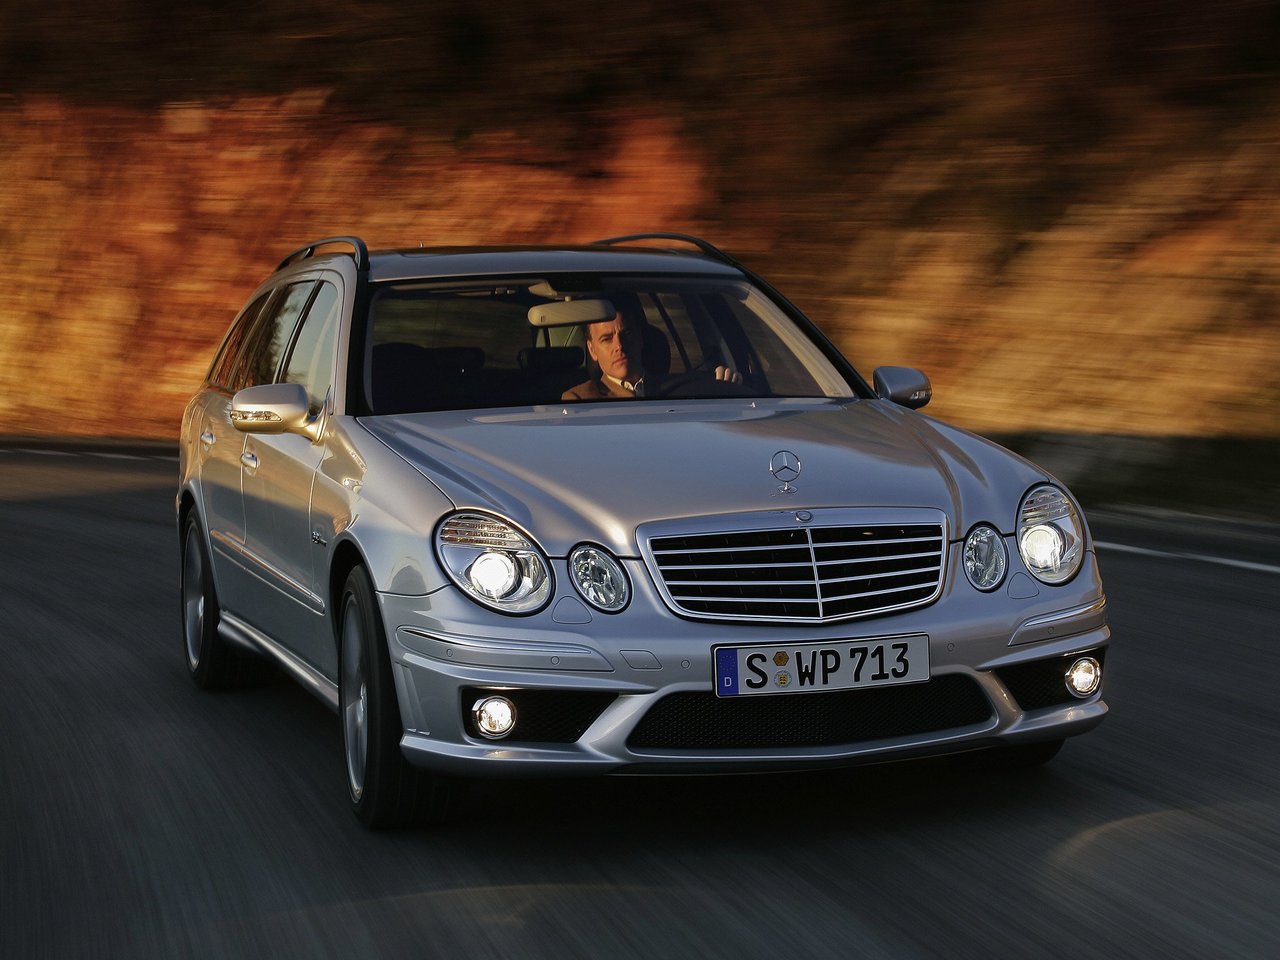 Расход газа одной комплектации универсала пять дверей Mercedes-Benz E-klasse AMG. Разница стоимости заправки газом и бензином. Автономный пробег до и после установки ГБО.